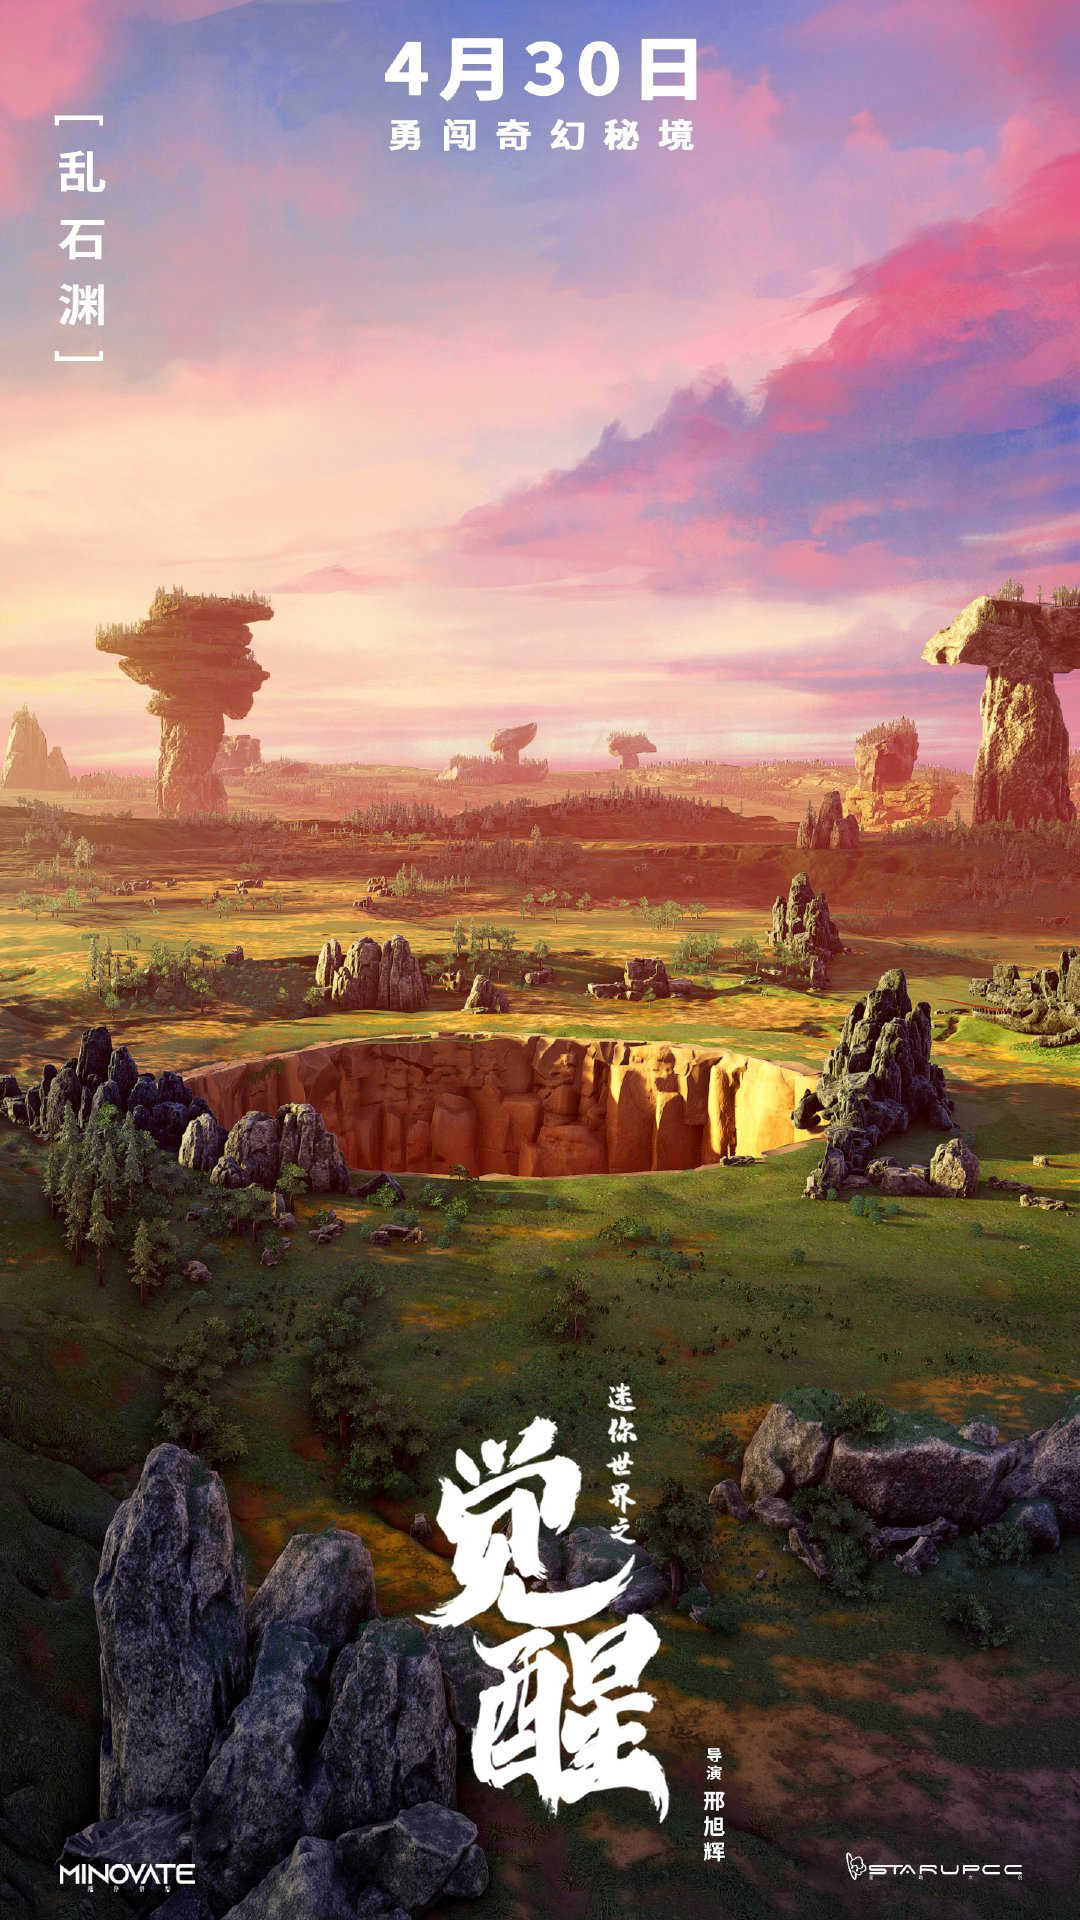 首部沙盒游戏IP电影《迷你世界之觉醒》公布新海报